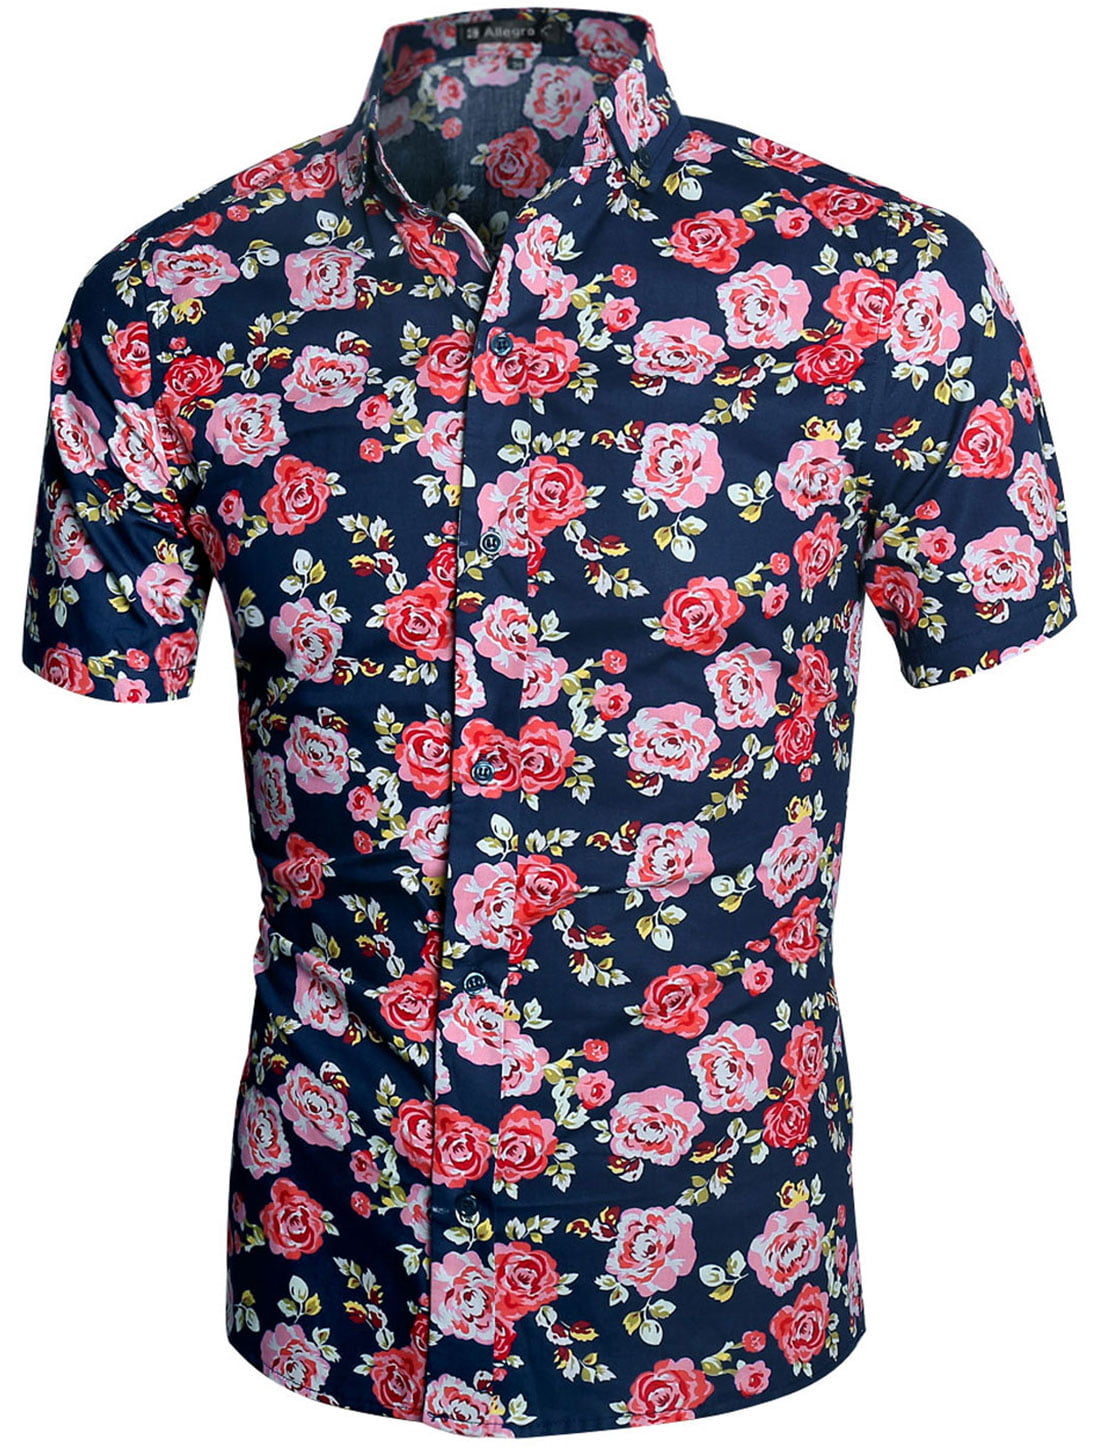 Men Flower Print Slim Fit Short Sleeve Button Down Hawaiian Shirt Navy ...